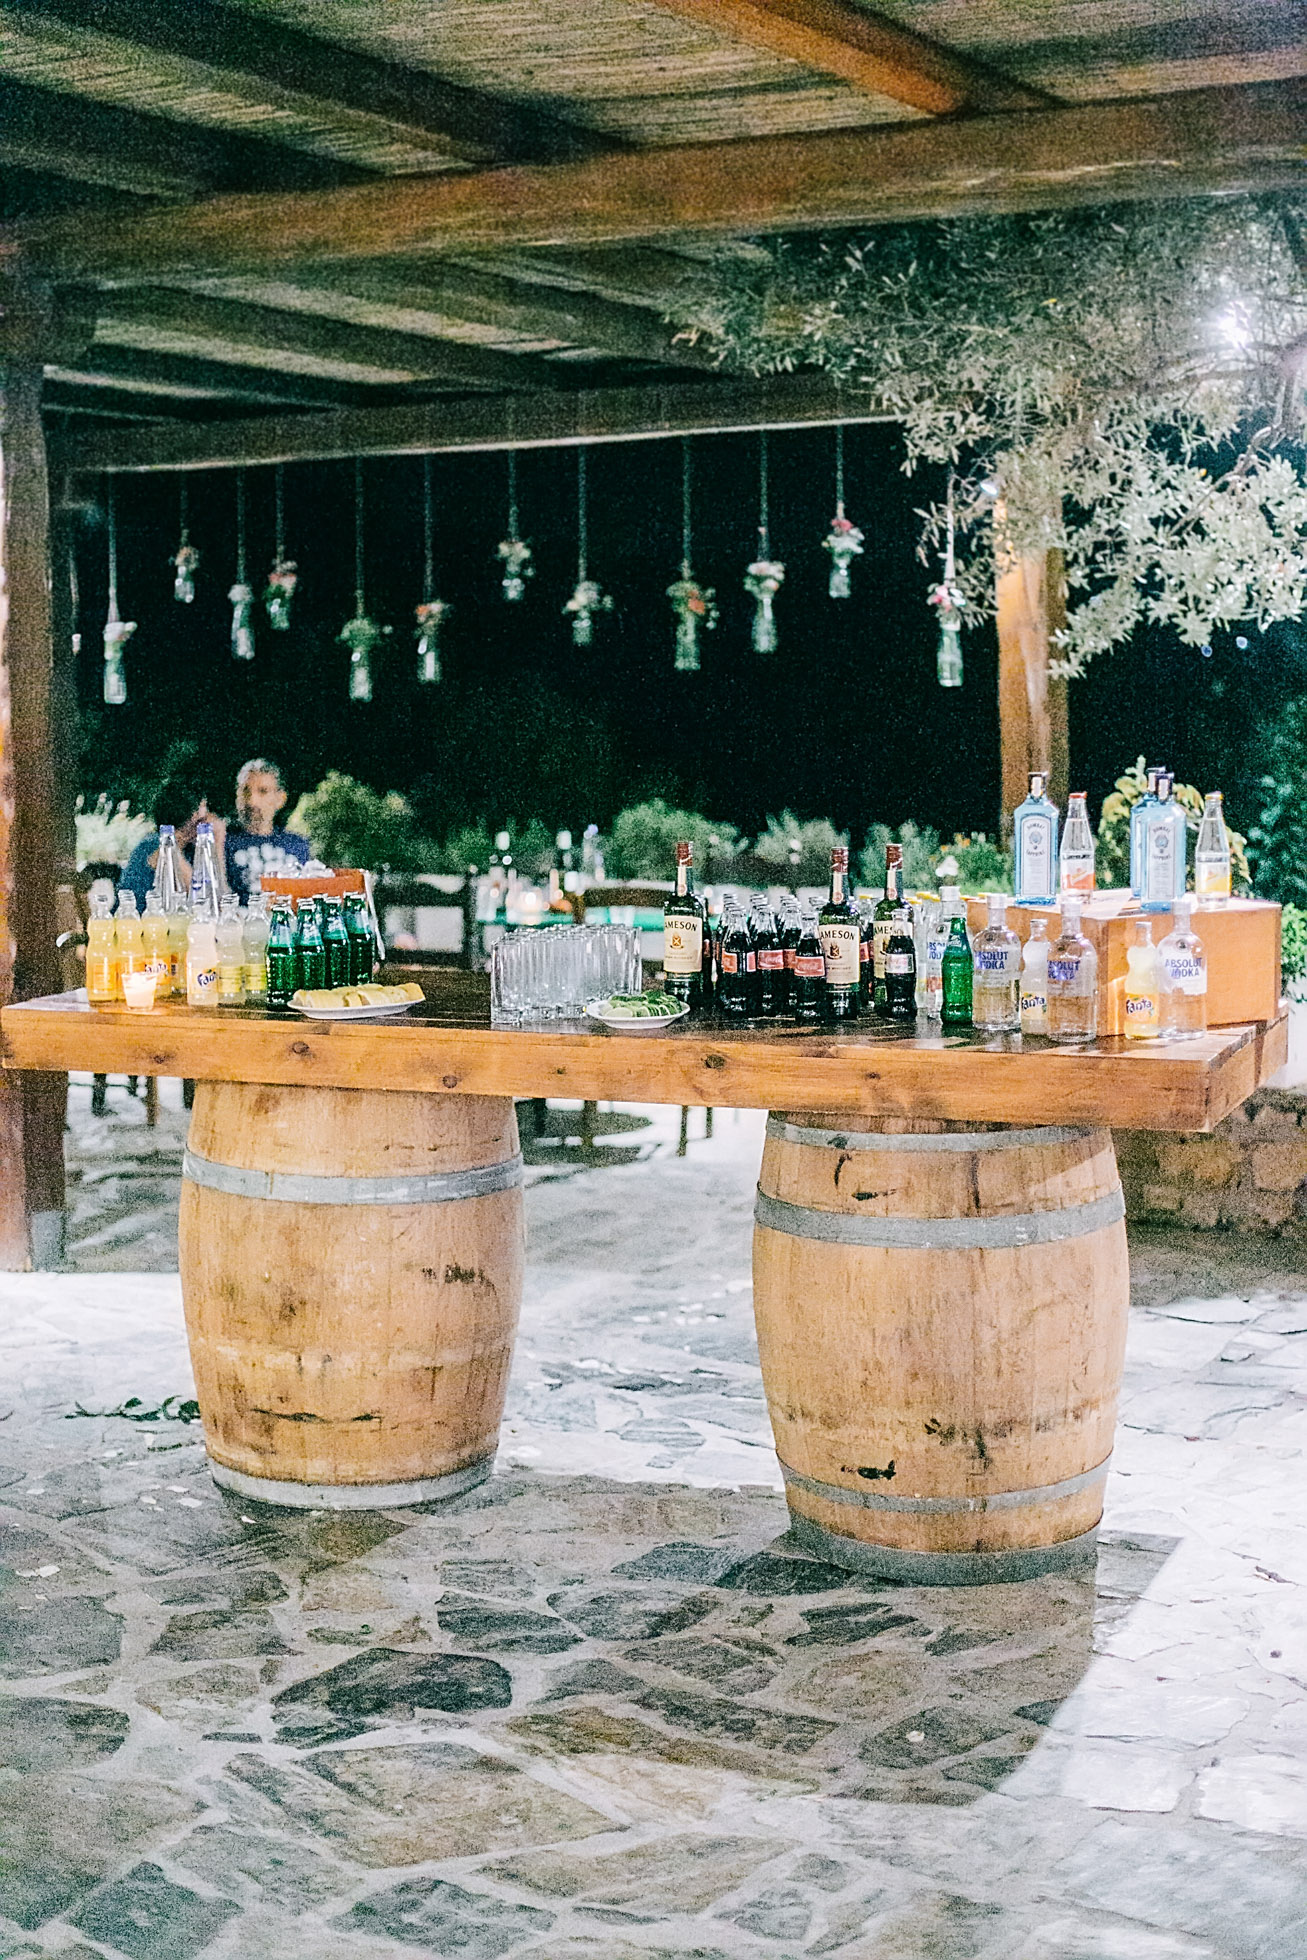 Wedding reception bar styled for a rustic wedding in Agreco Farm.